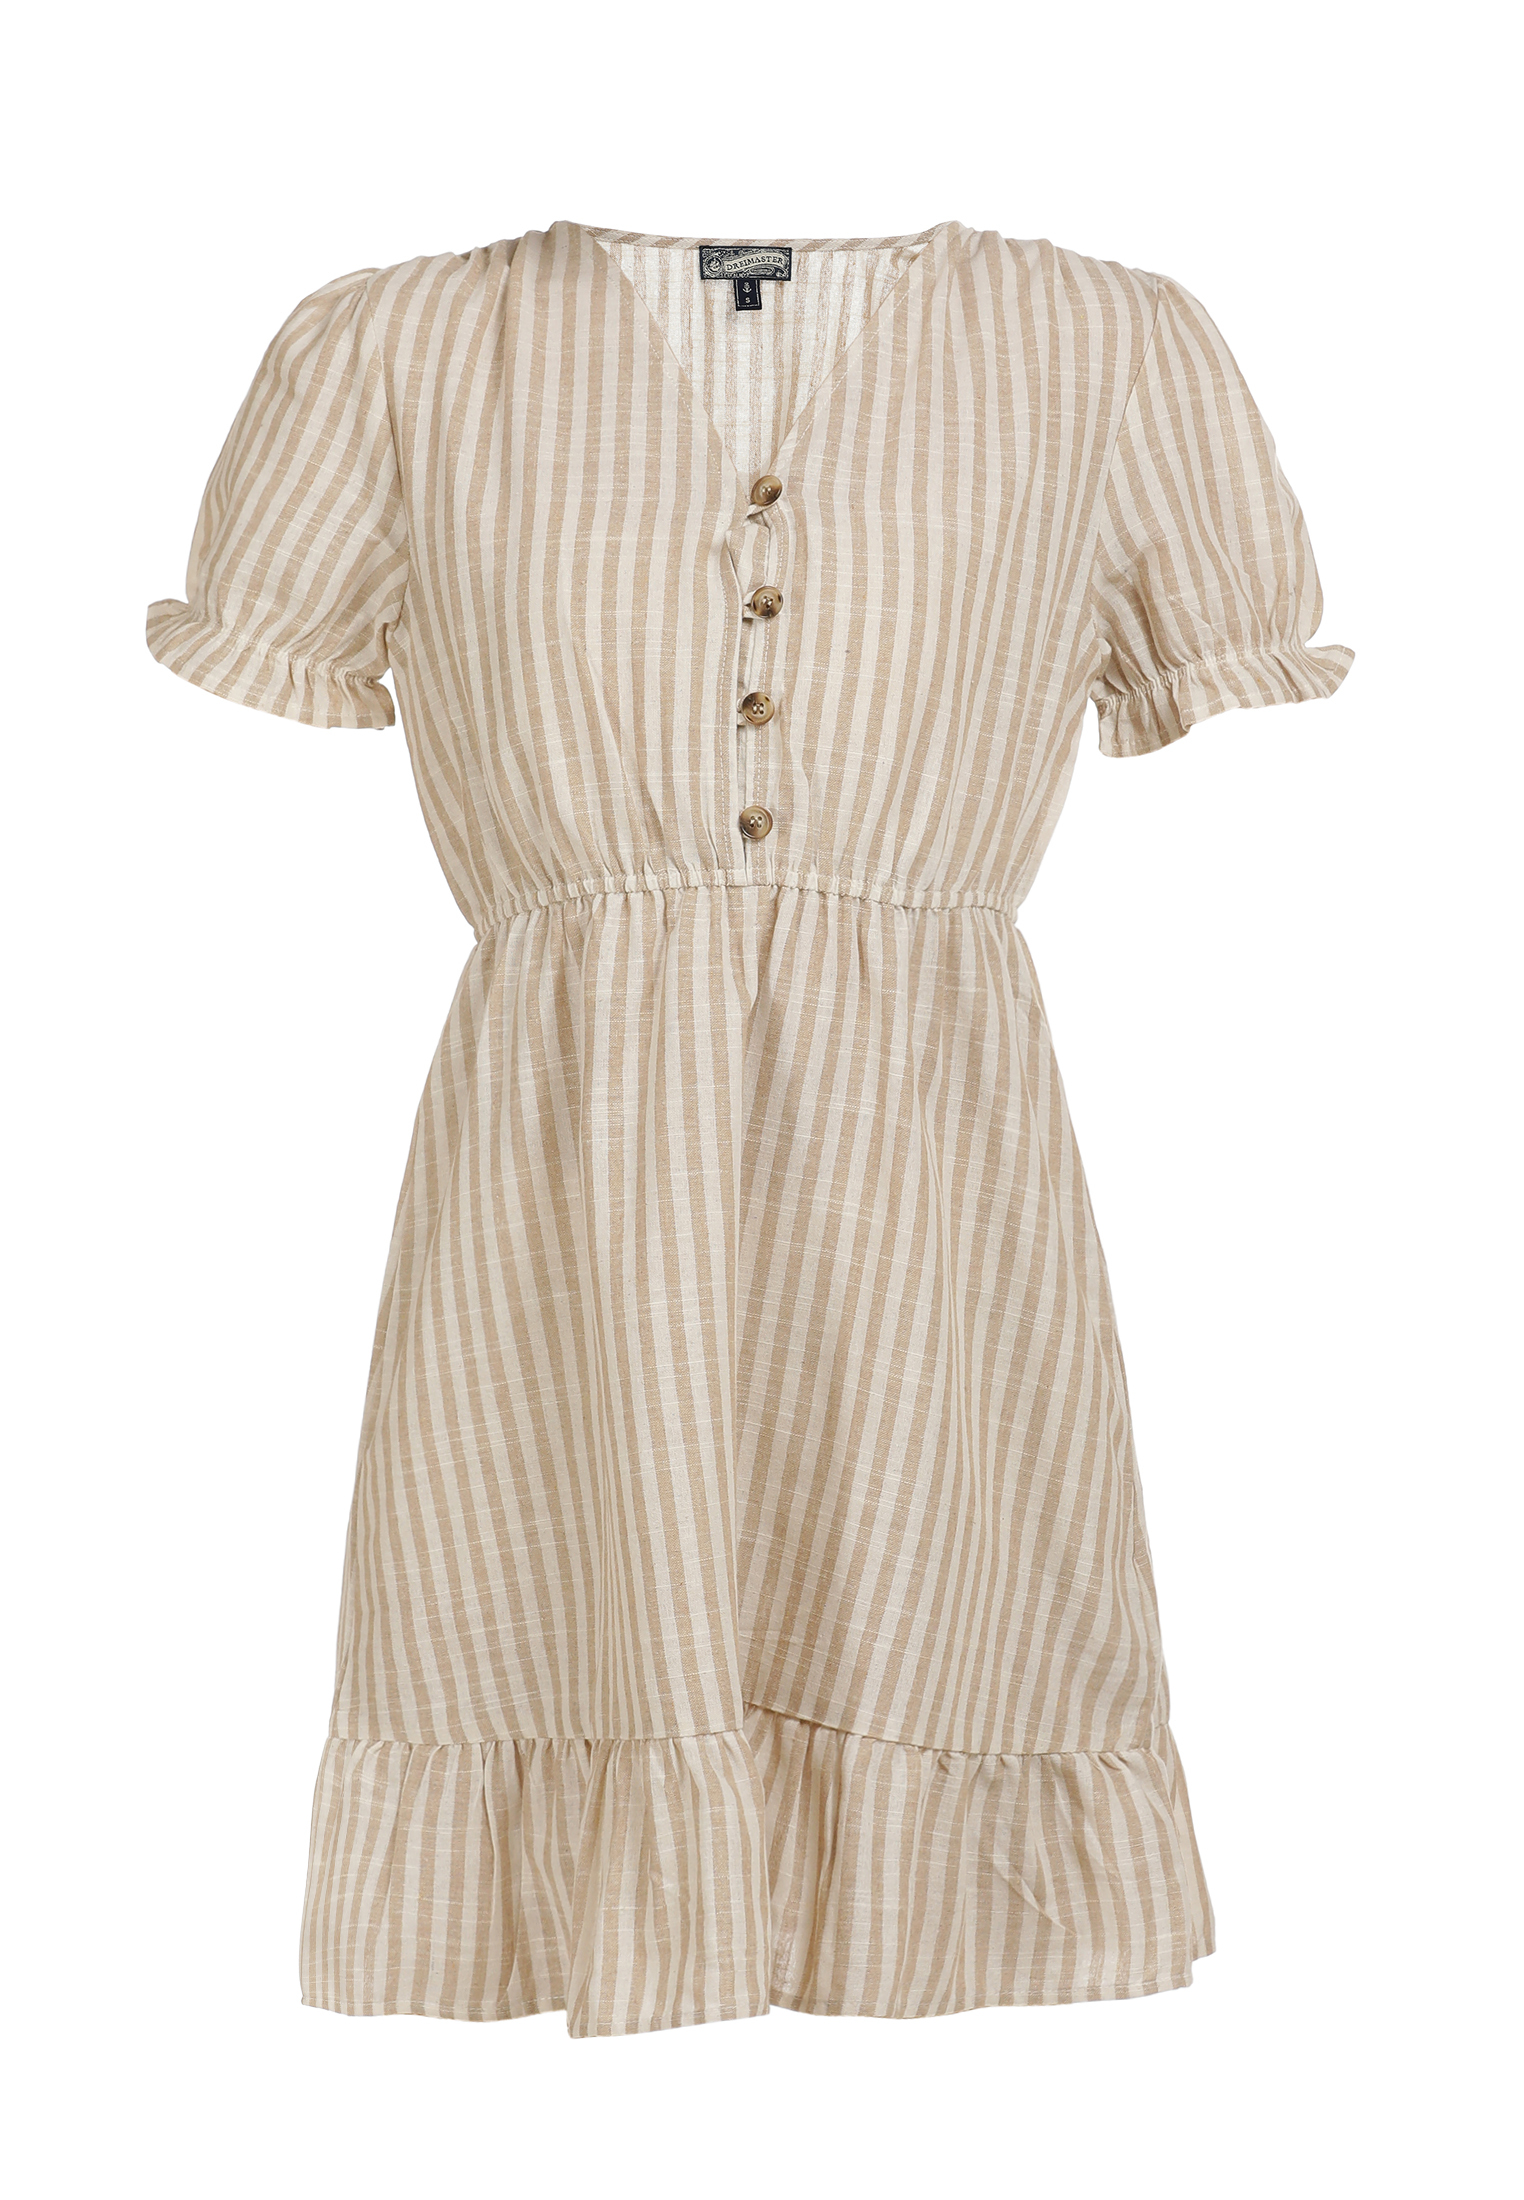 Odzież Sukienki DreiMaster Vintage Letnia sukienka w kolorze Biały, Piaskowym 